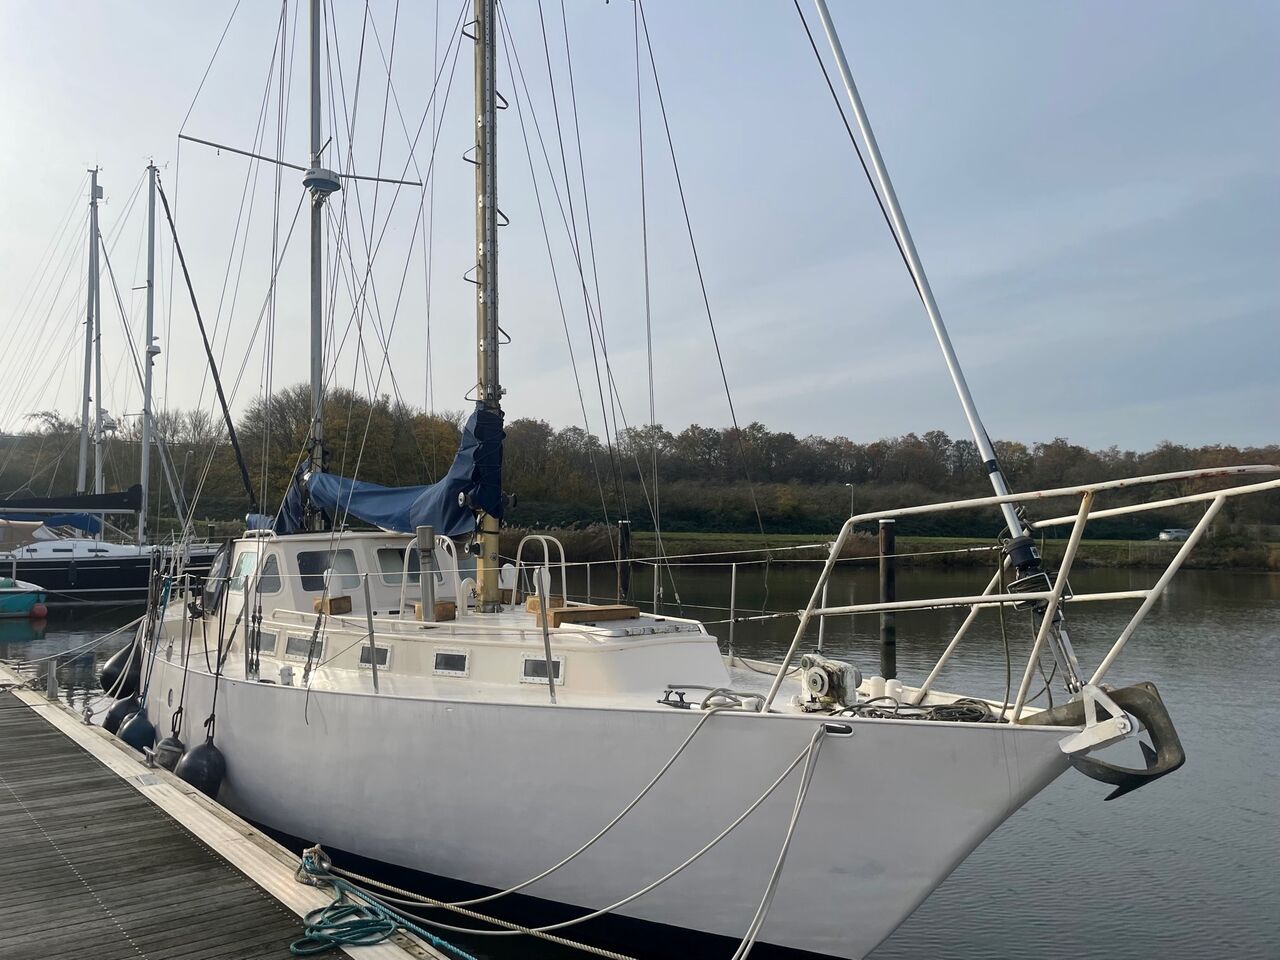 Gillissen 1260 Ketch Rig (sailboat) for sale